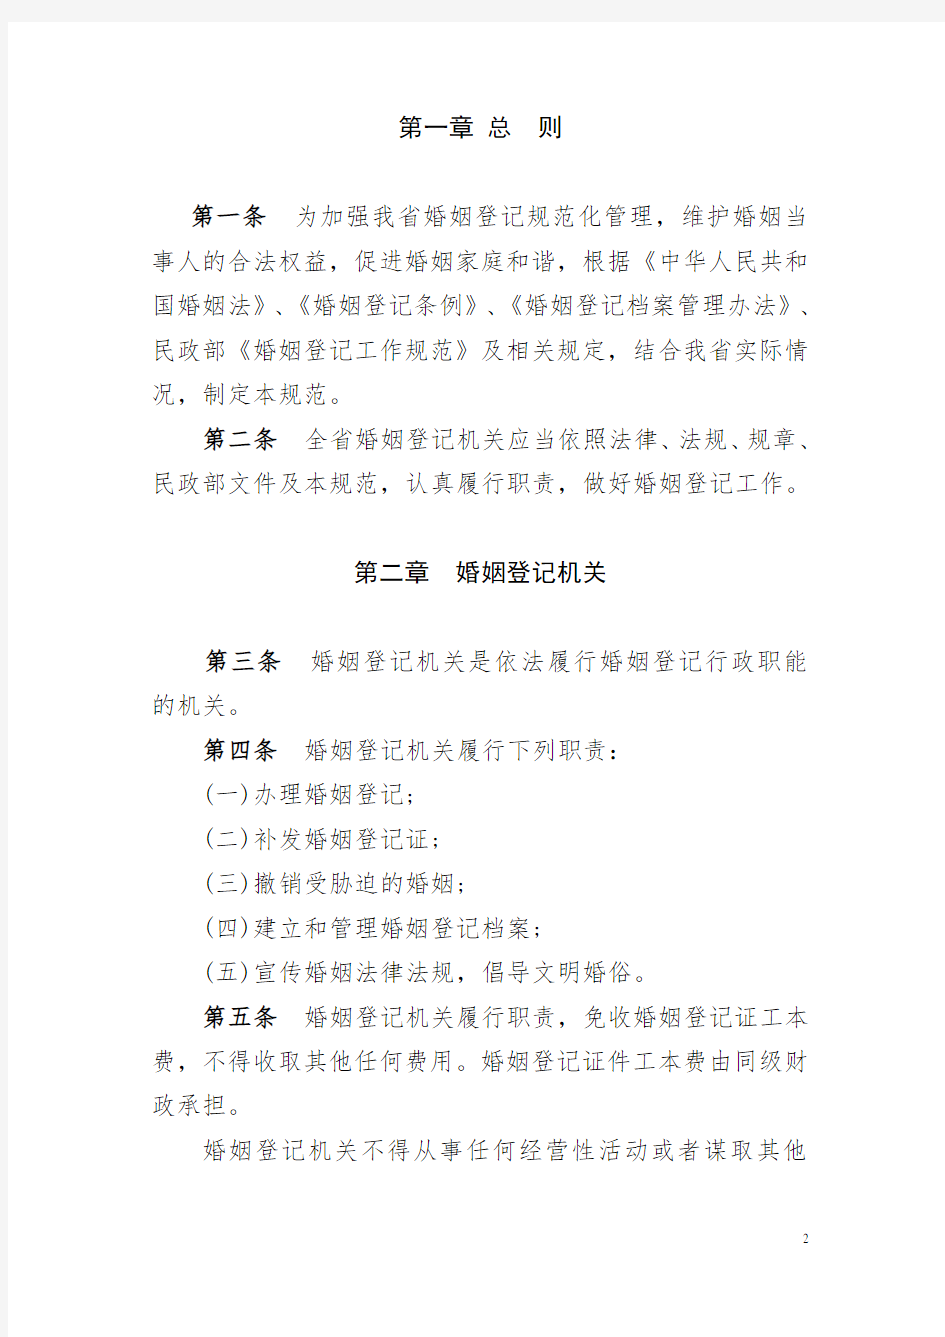 北京市民政局关于印发《北京市婚姻登记工作规范》的通知